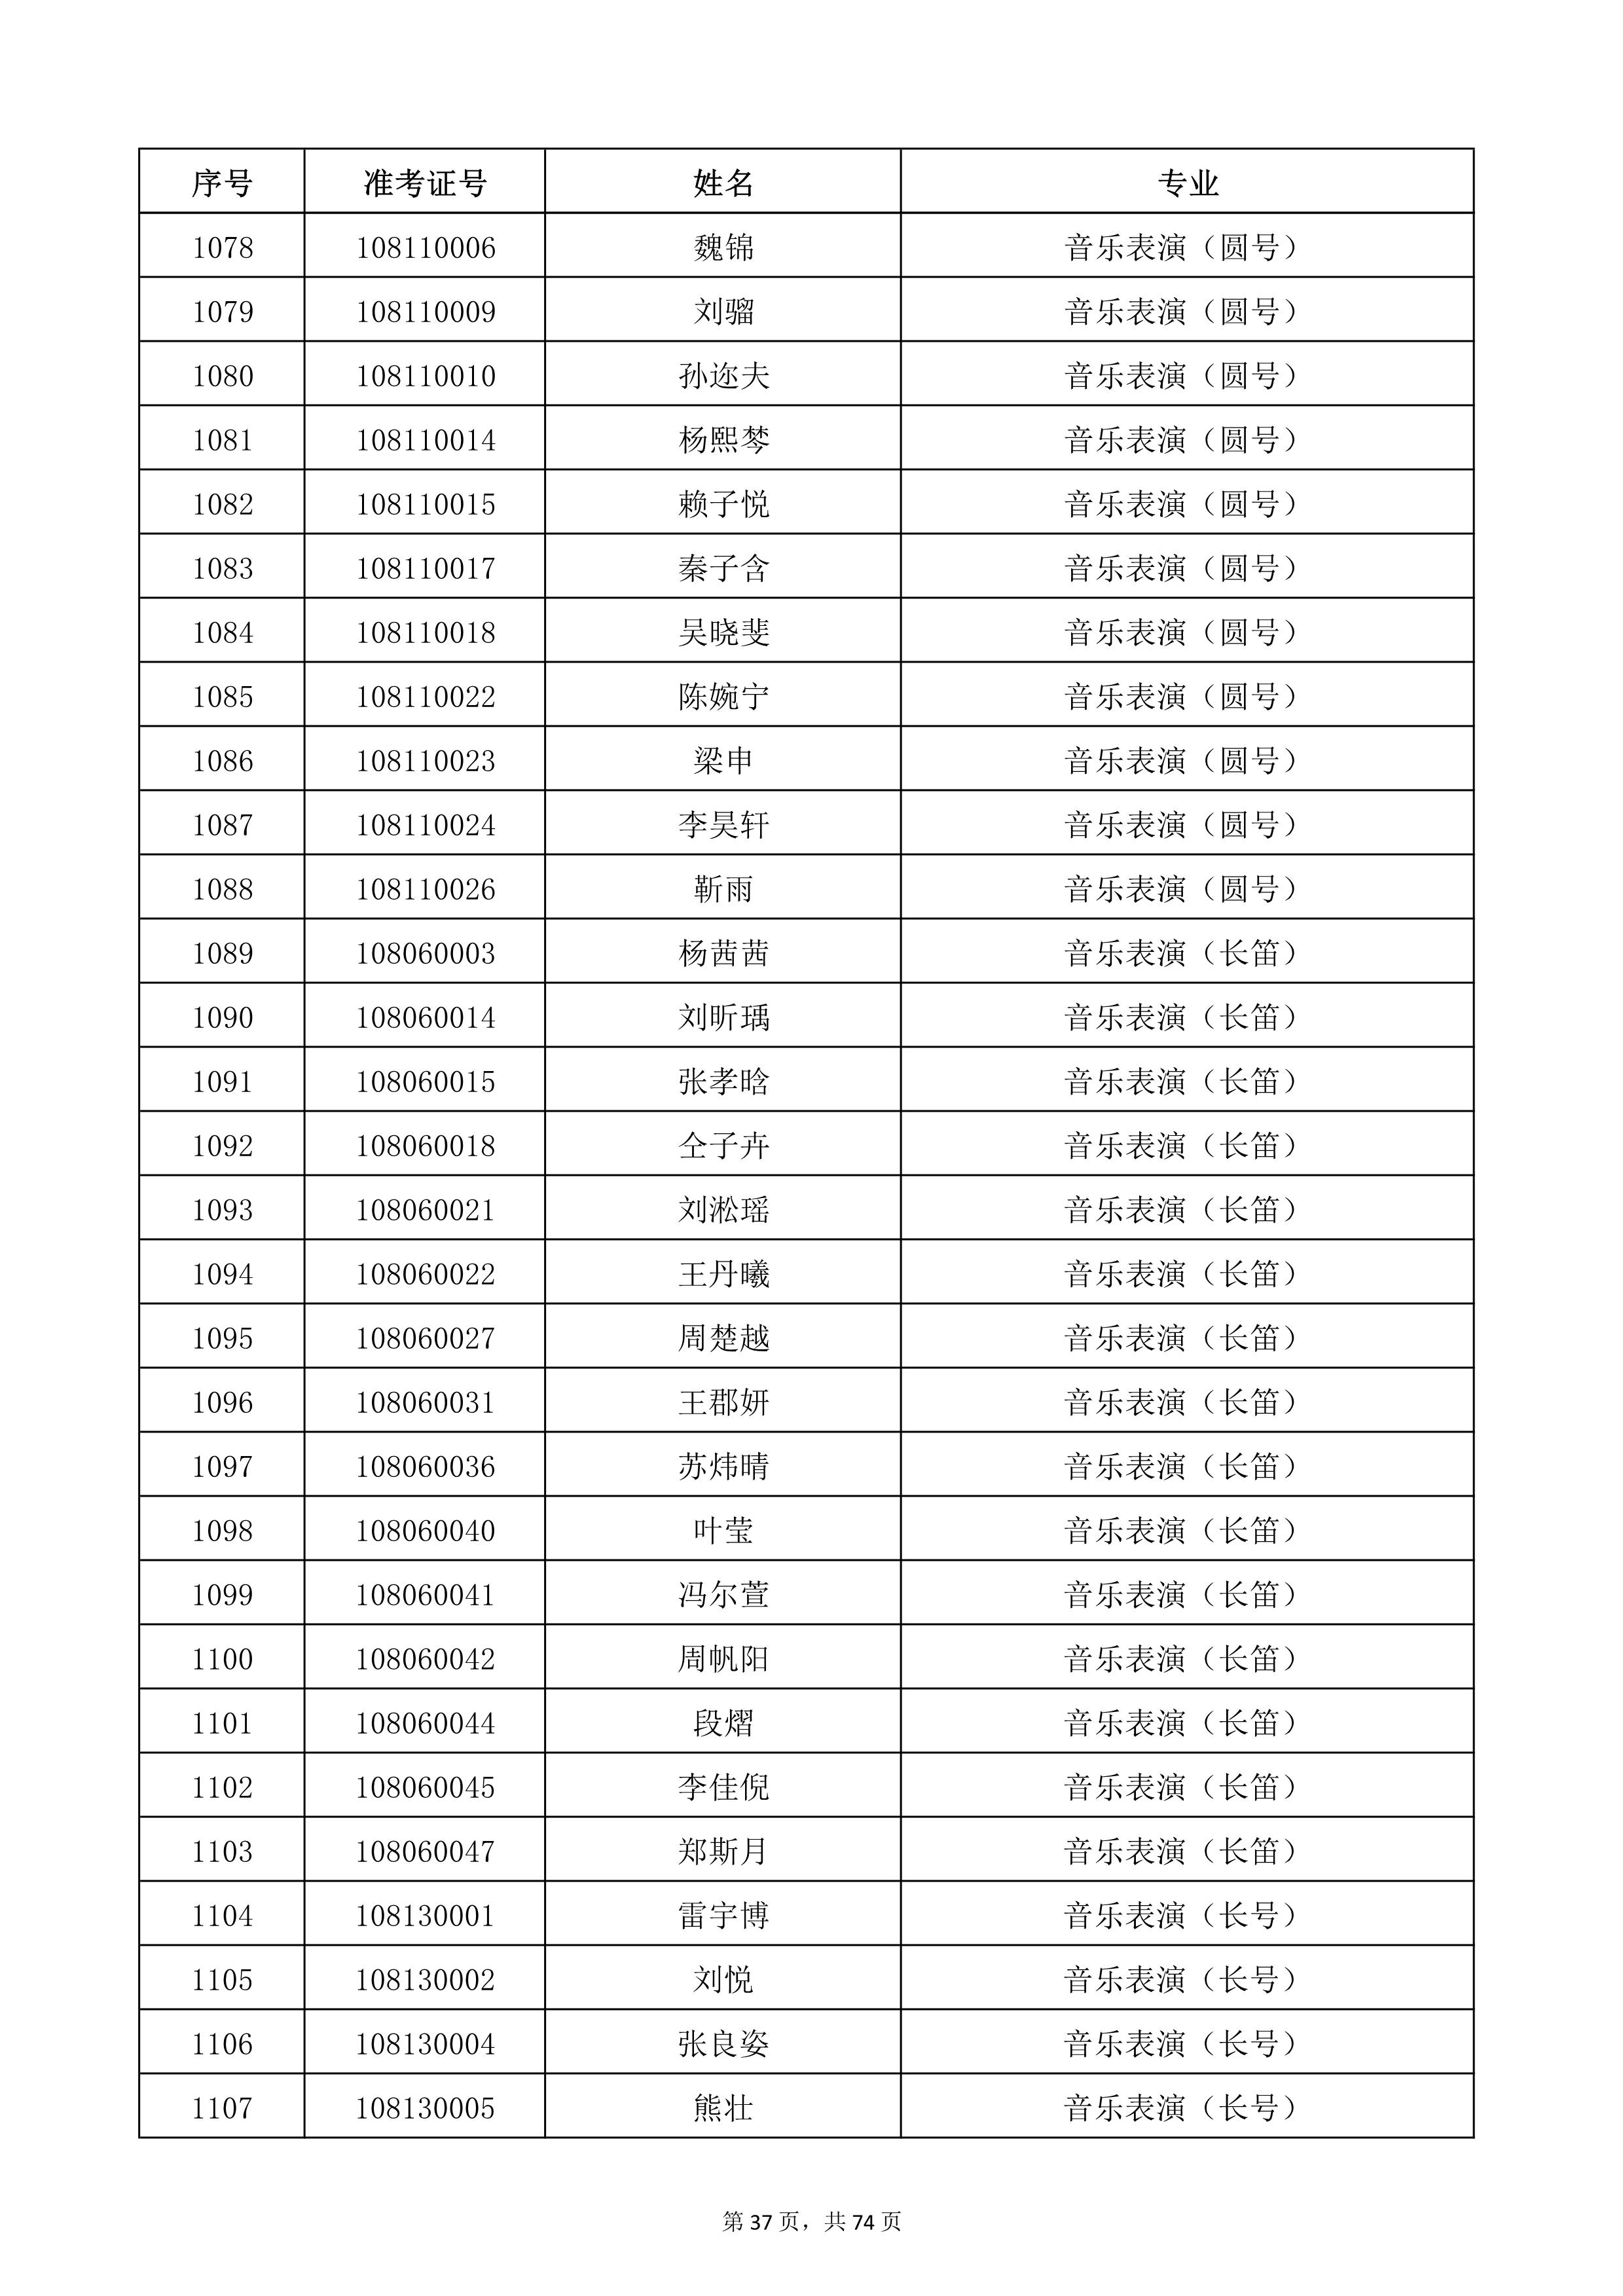 天津音乐学院2022年本科招生考试复试名单_37.jpg